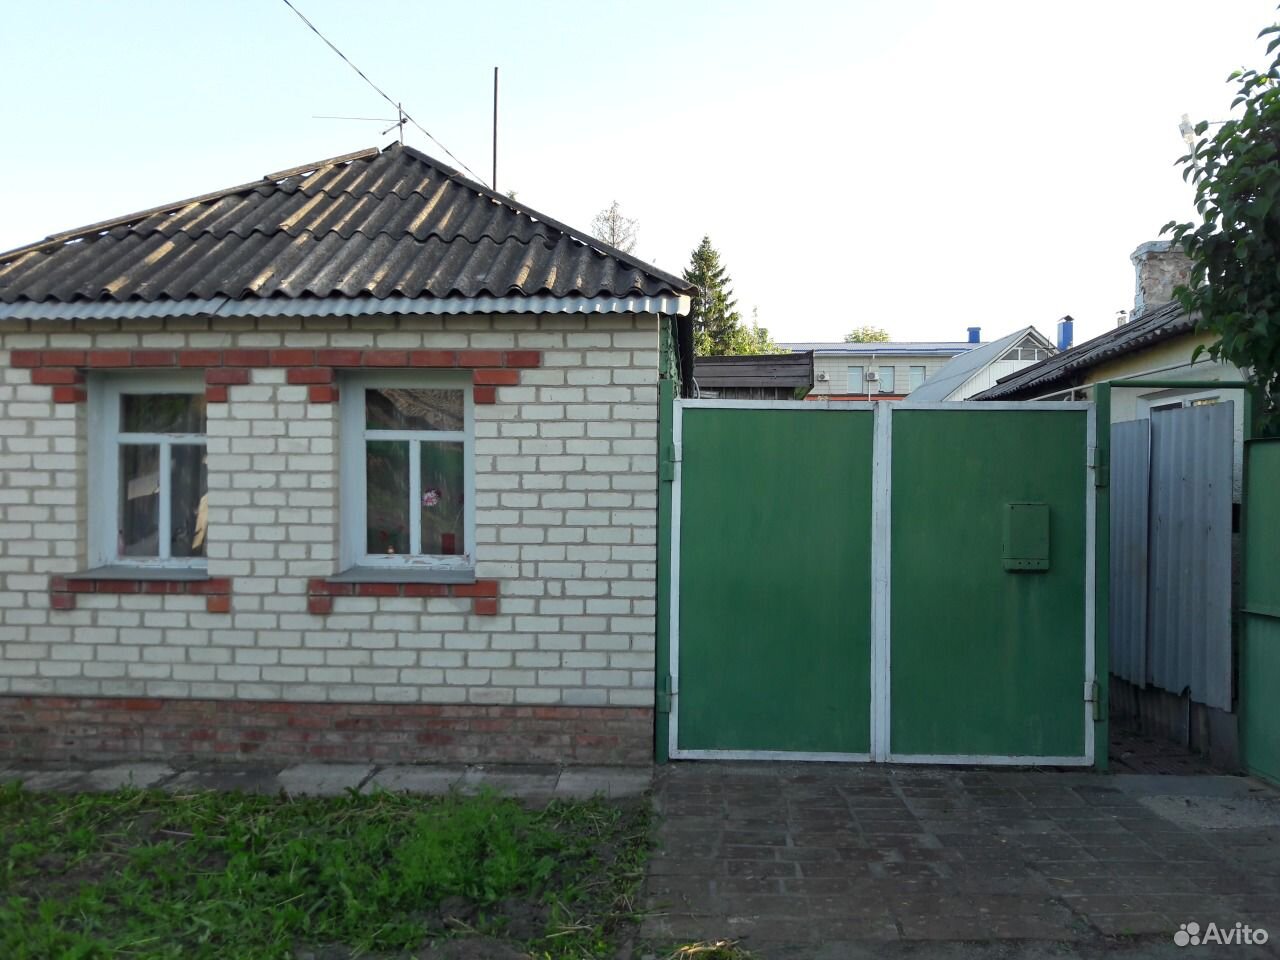 Продажа домов в белгороде новые объявления на авито с фото